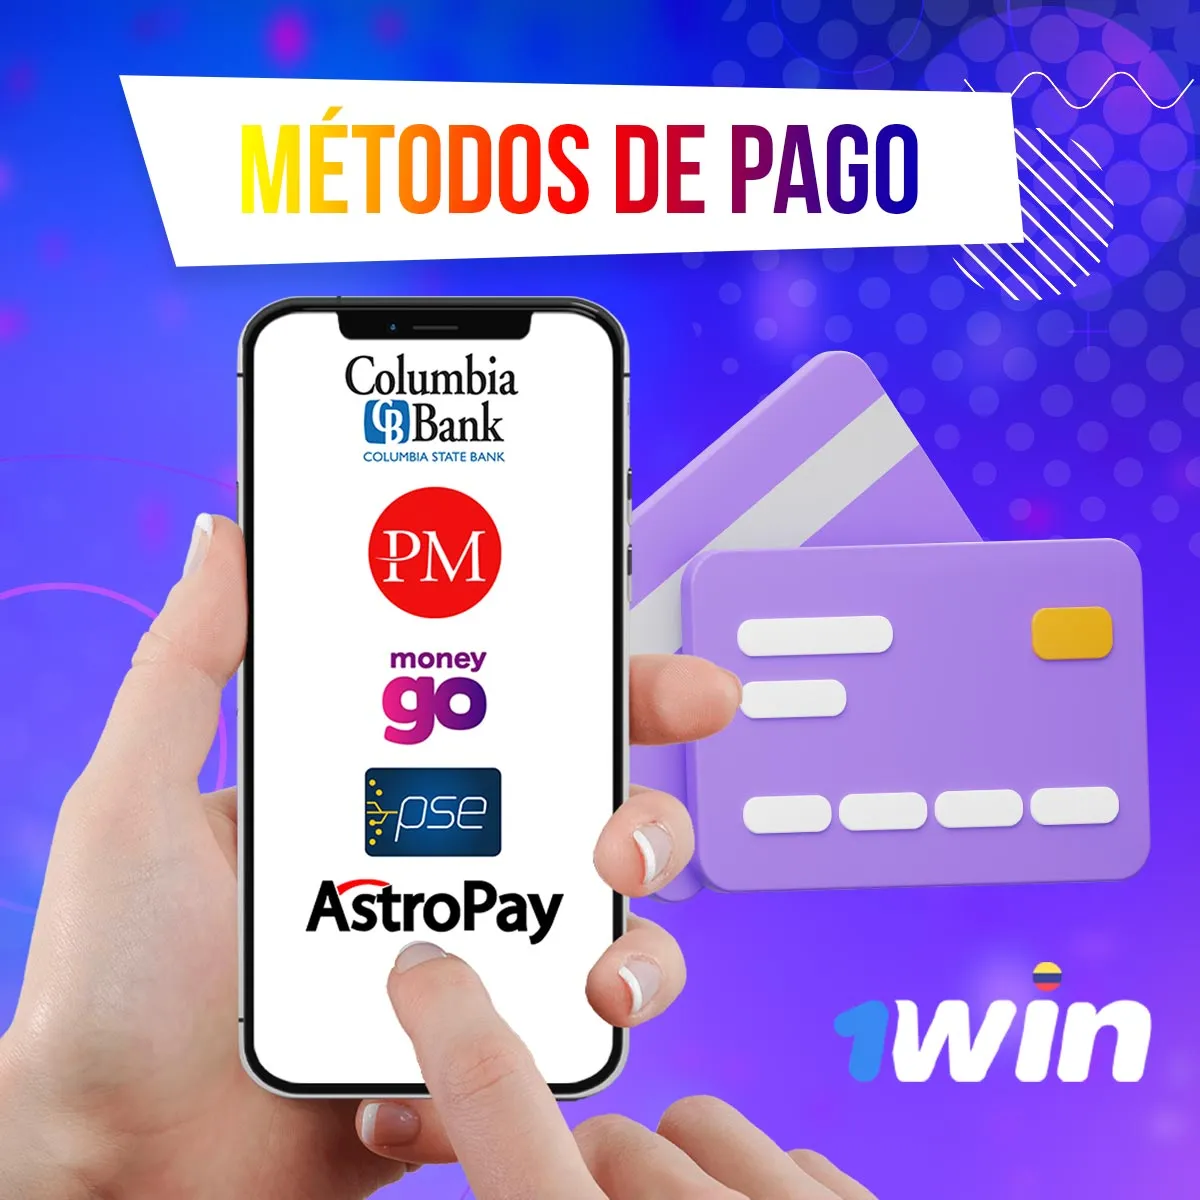 Todos los métodos de pago en la aplicación móvil 1win Colombia